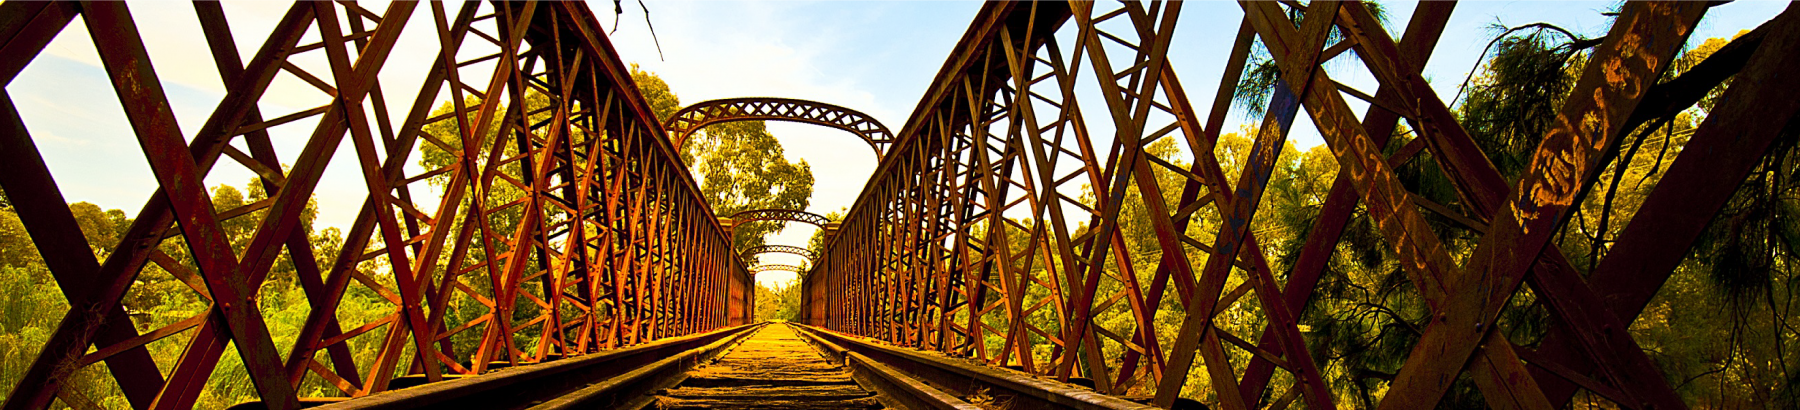 Narrandera Railway Bridge